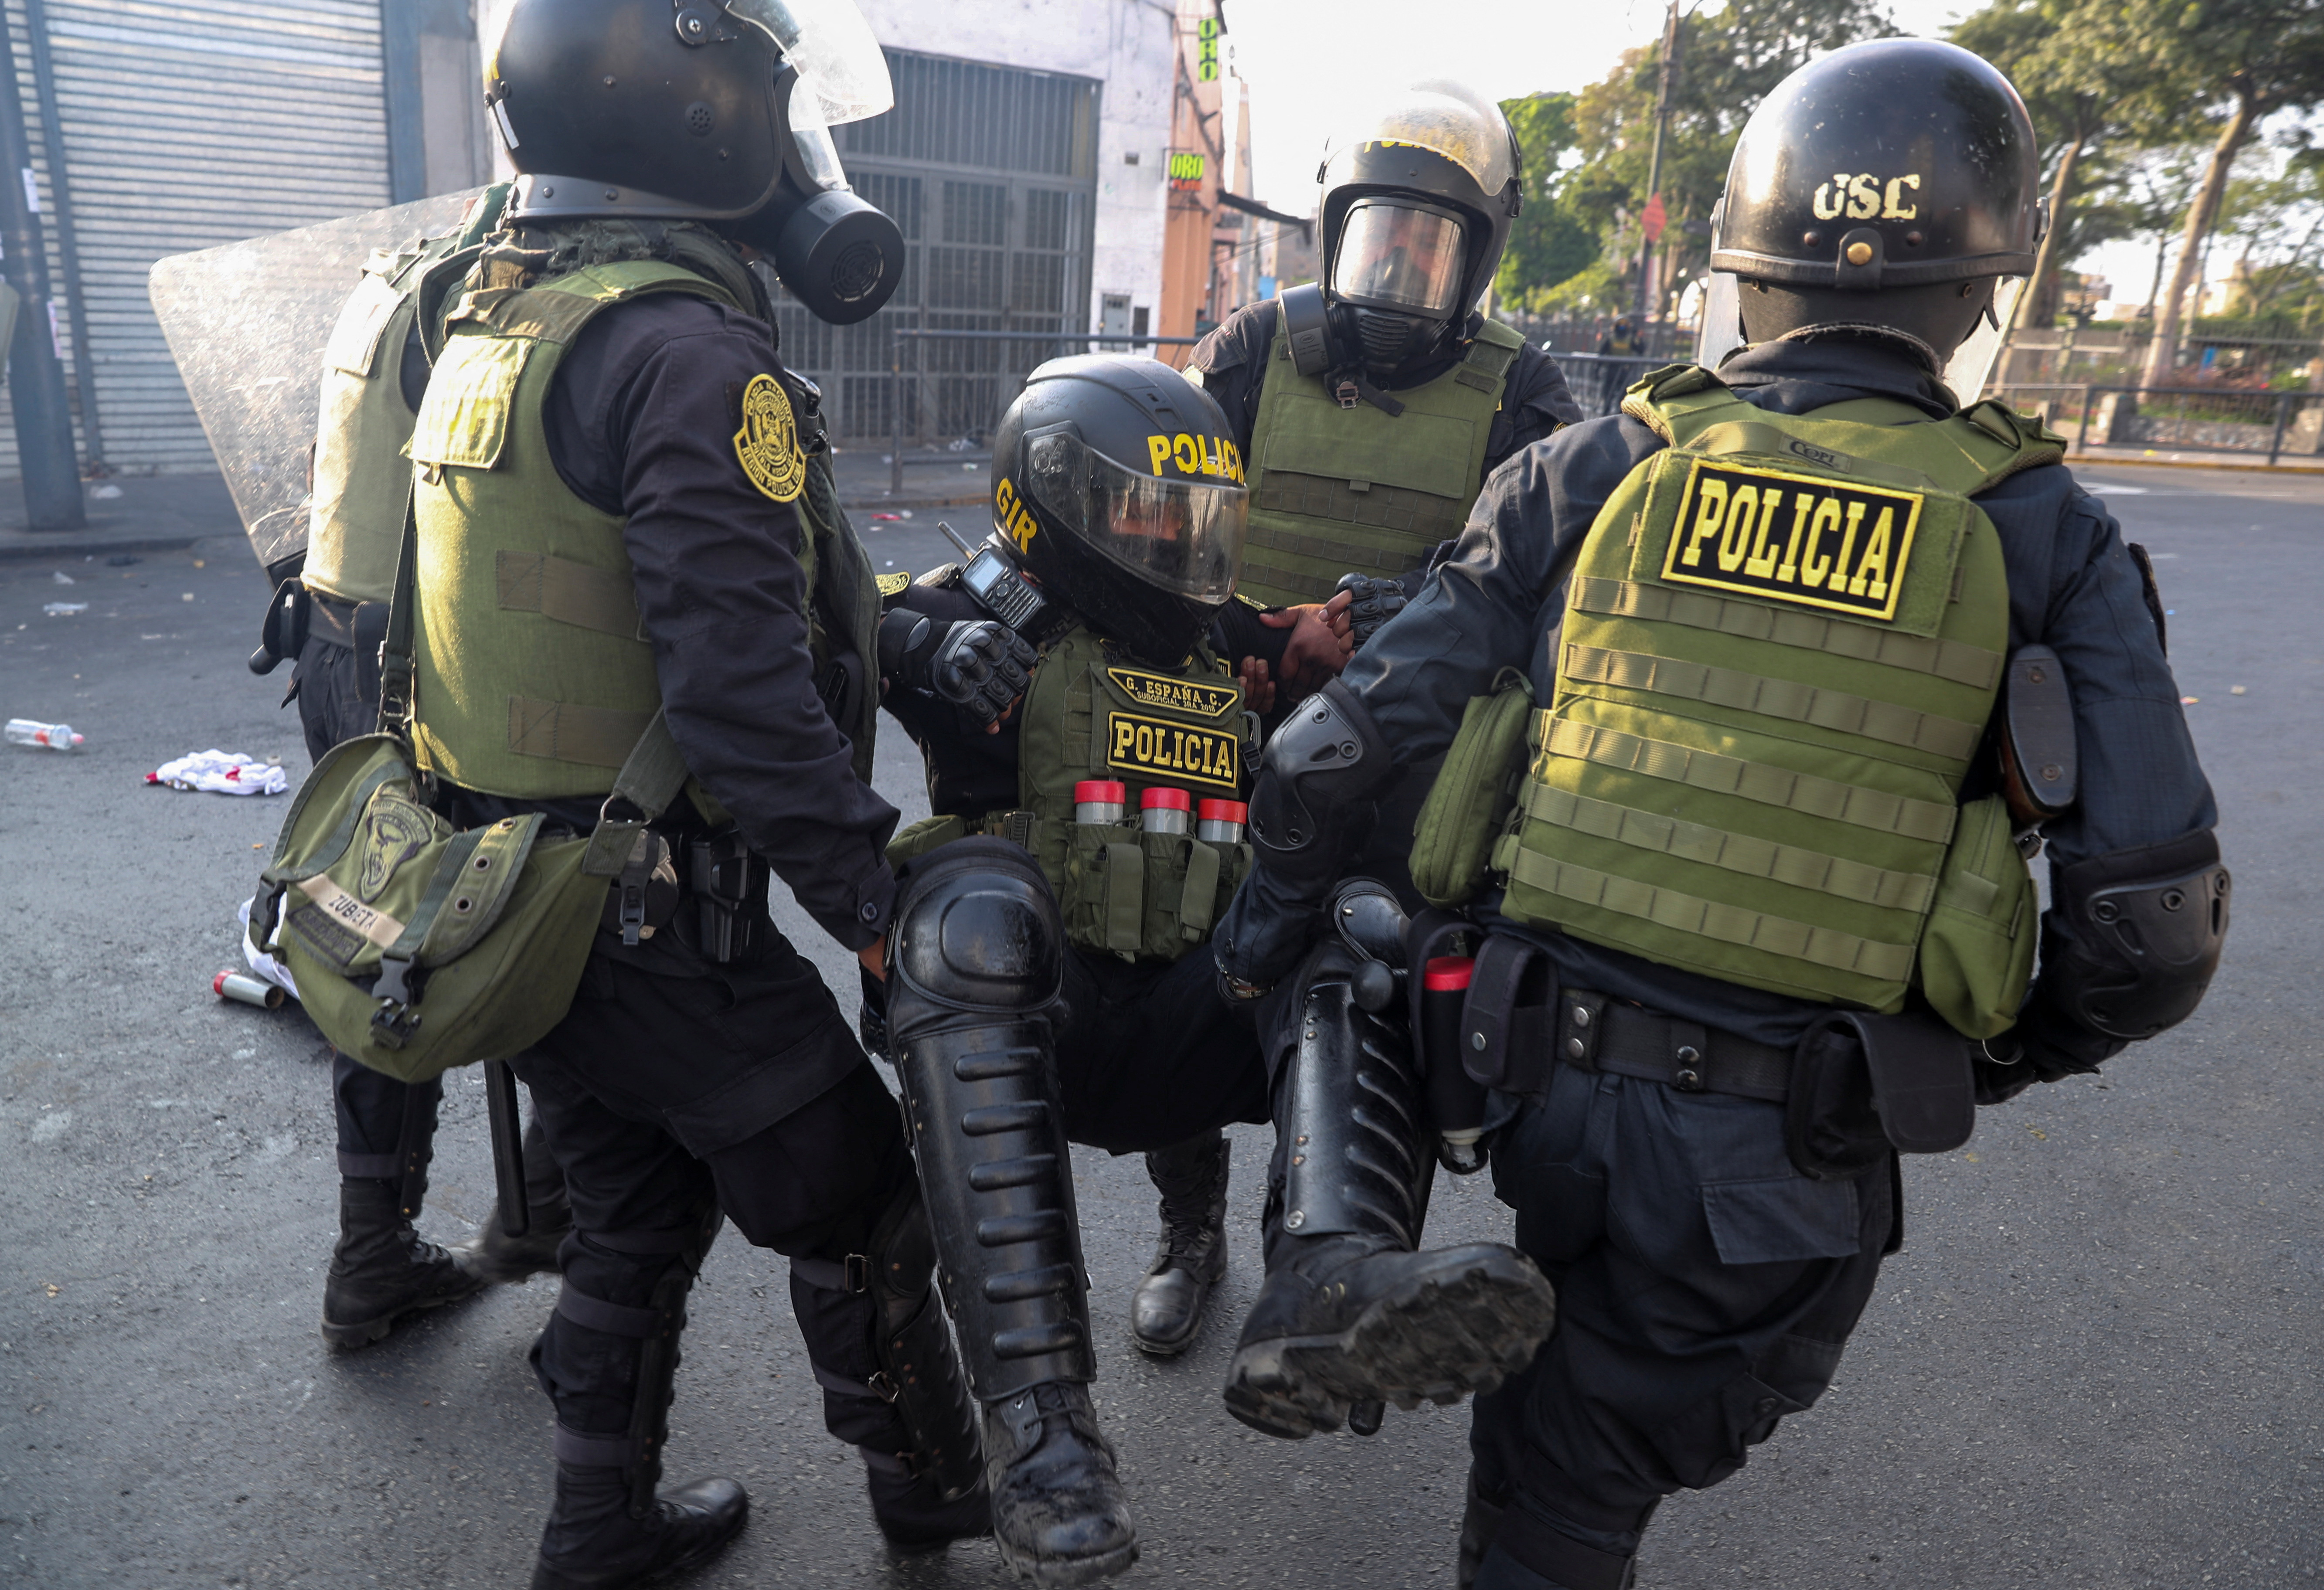 Policías heridos durante enfrentamientos en el Centro de Lima REUTERS/Sebastian Castaneda